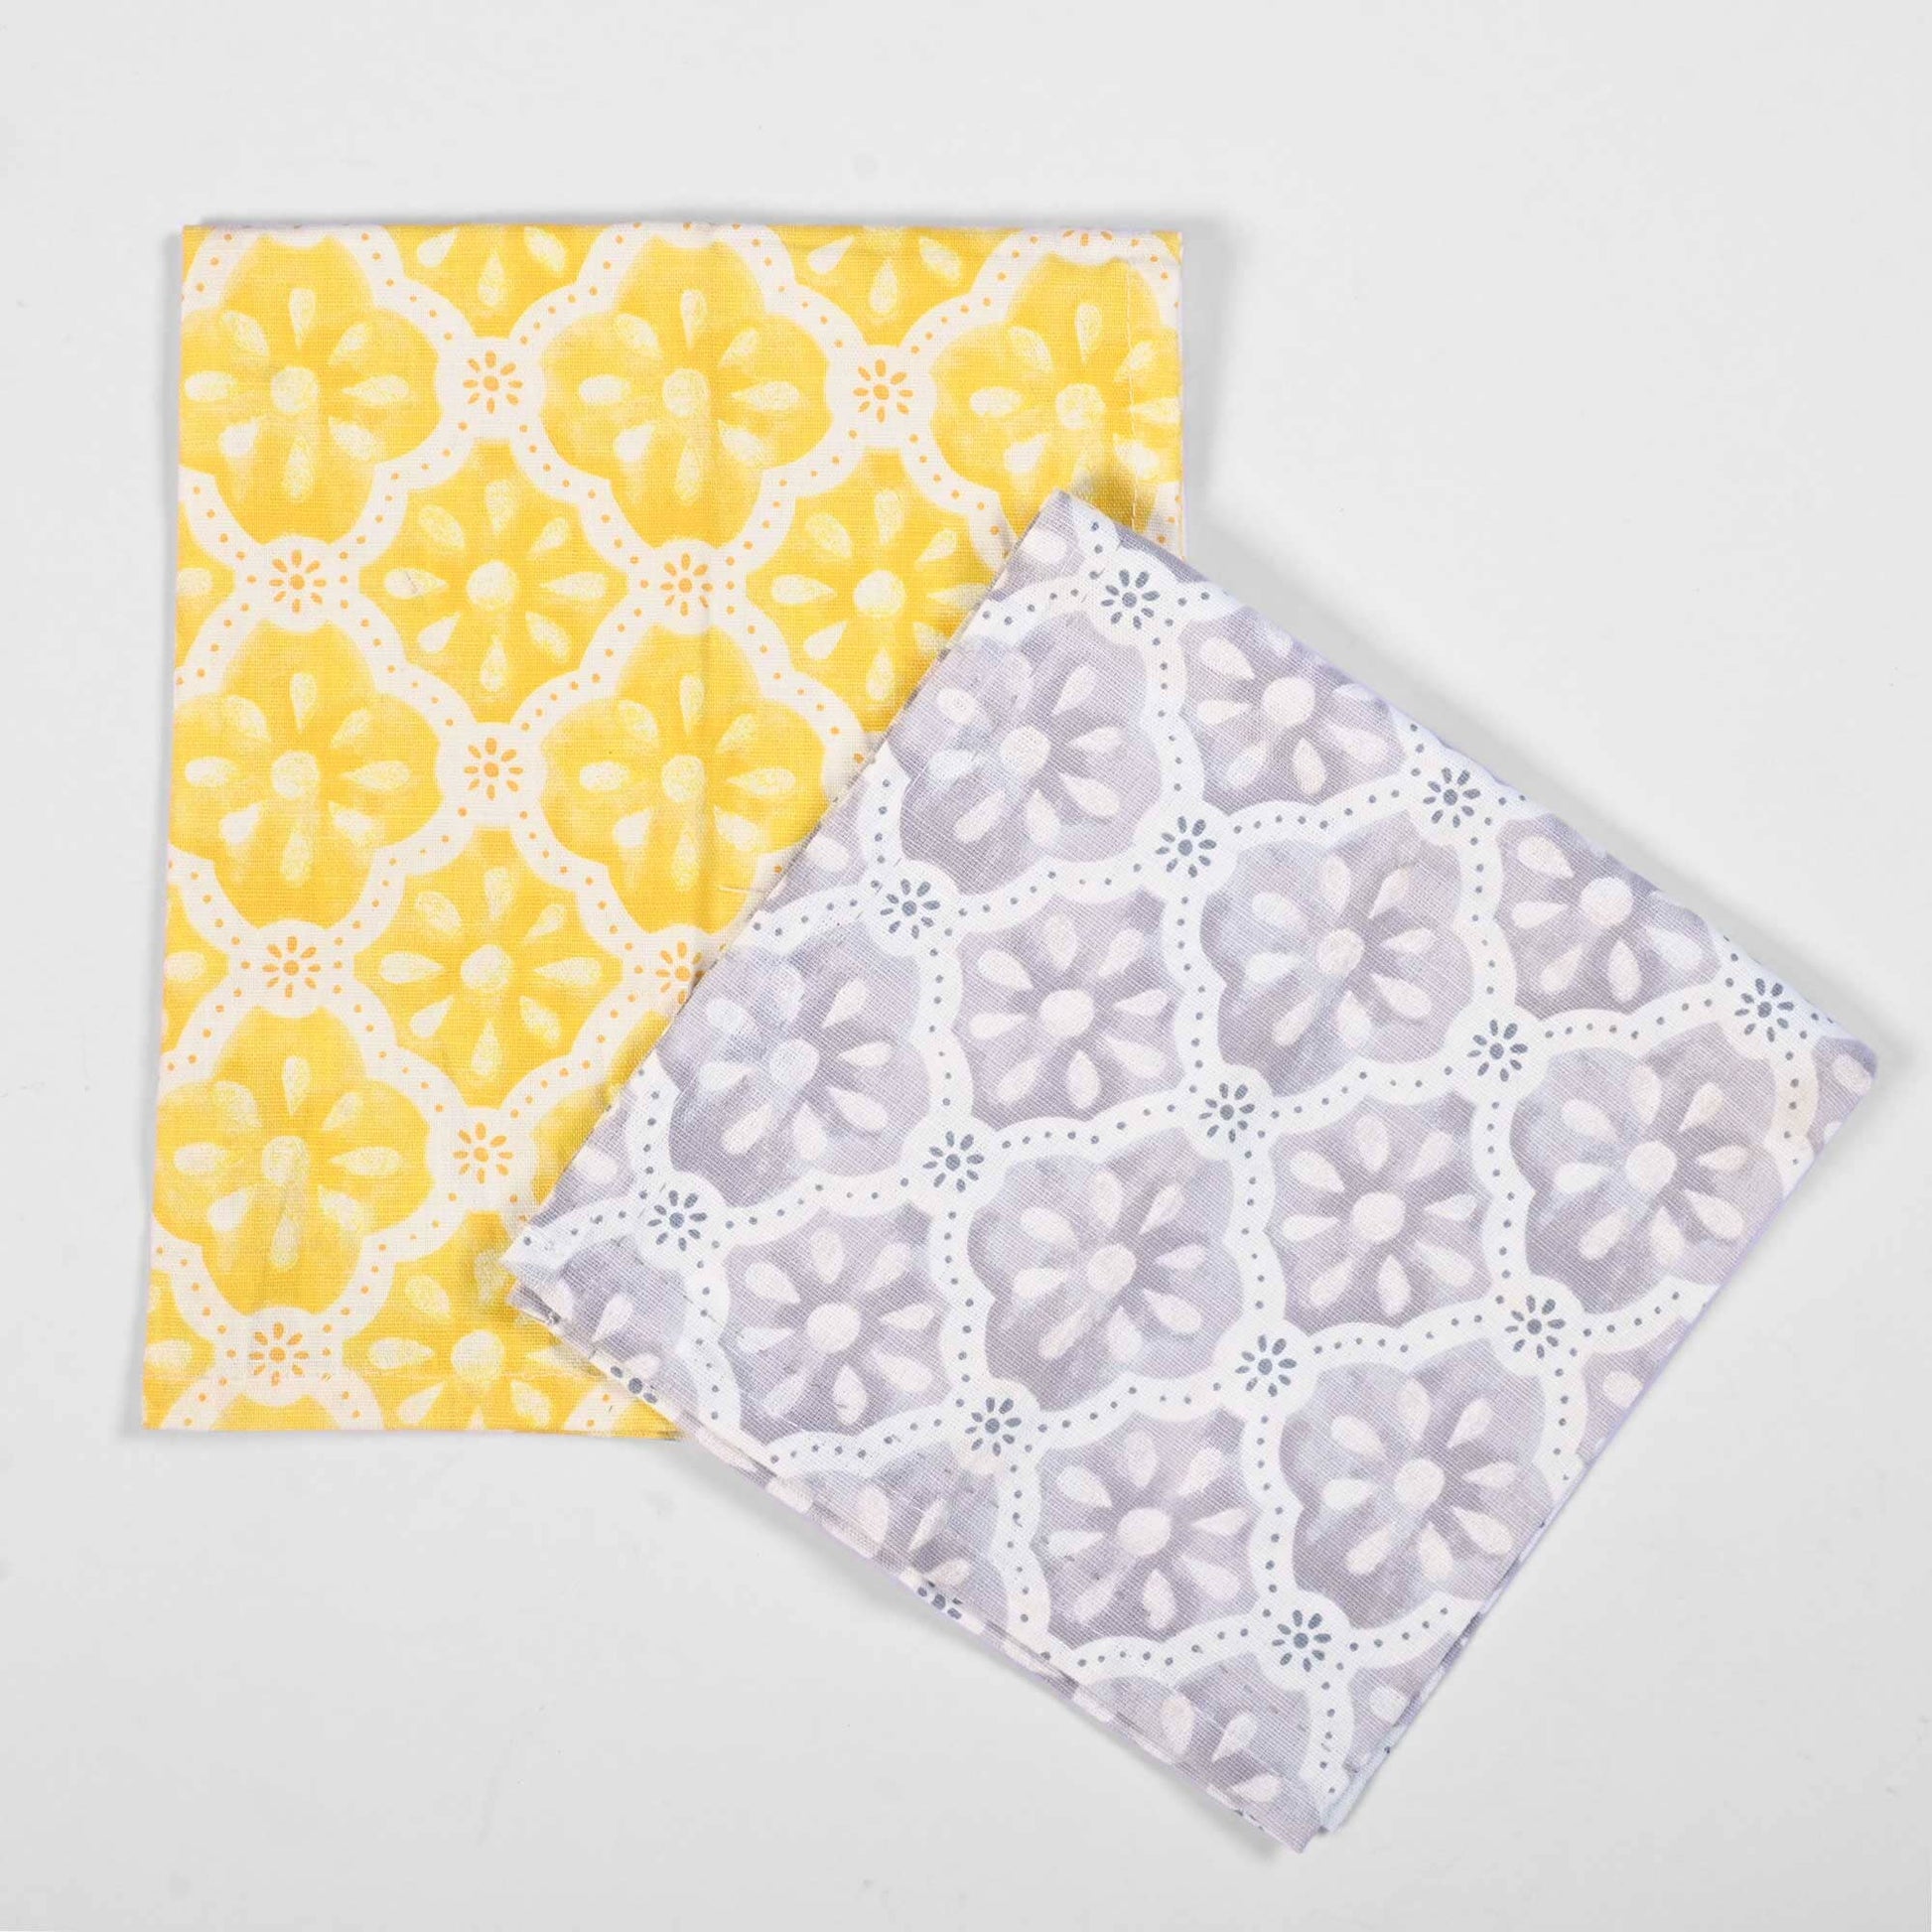 Hermel Towelette Cloth Napkin - Pack of 2 Home Supplies De Artistic 